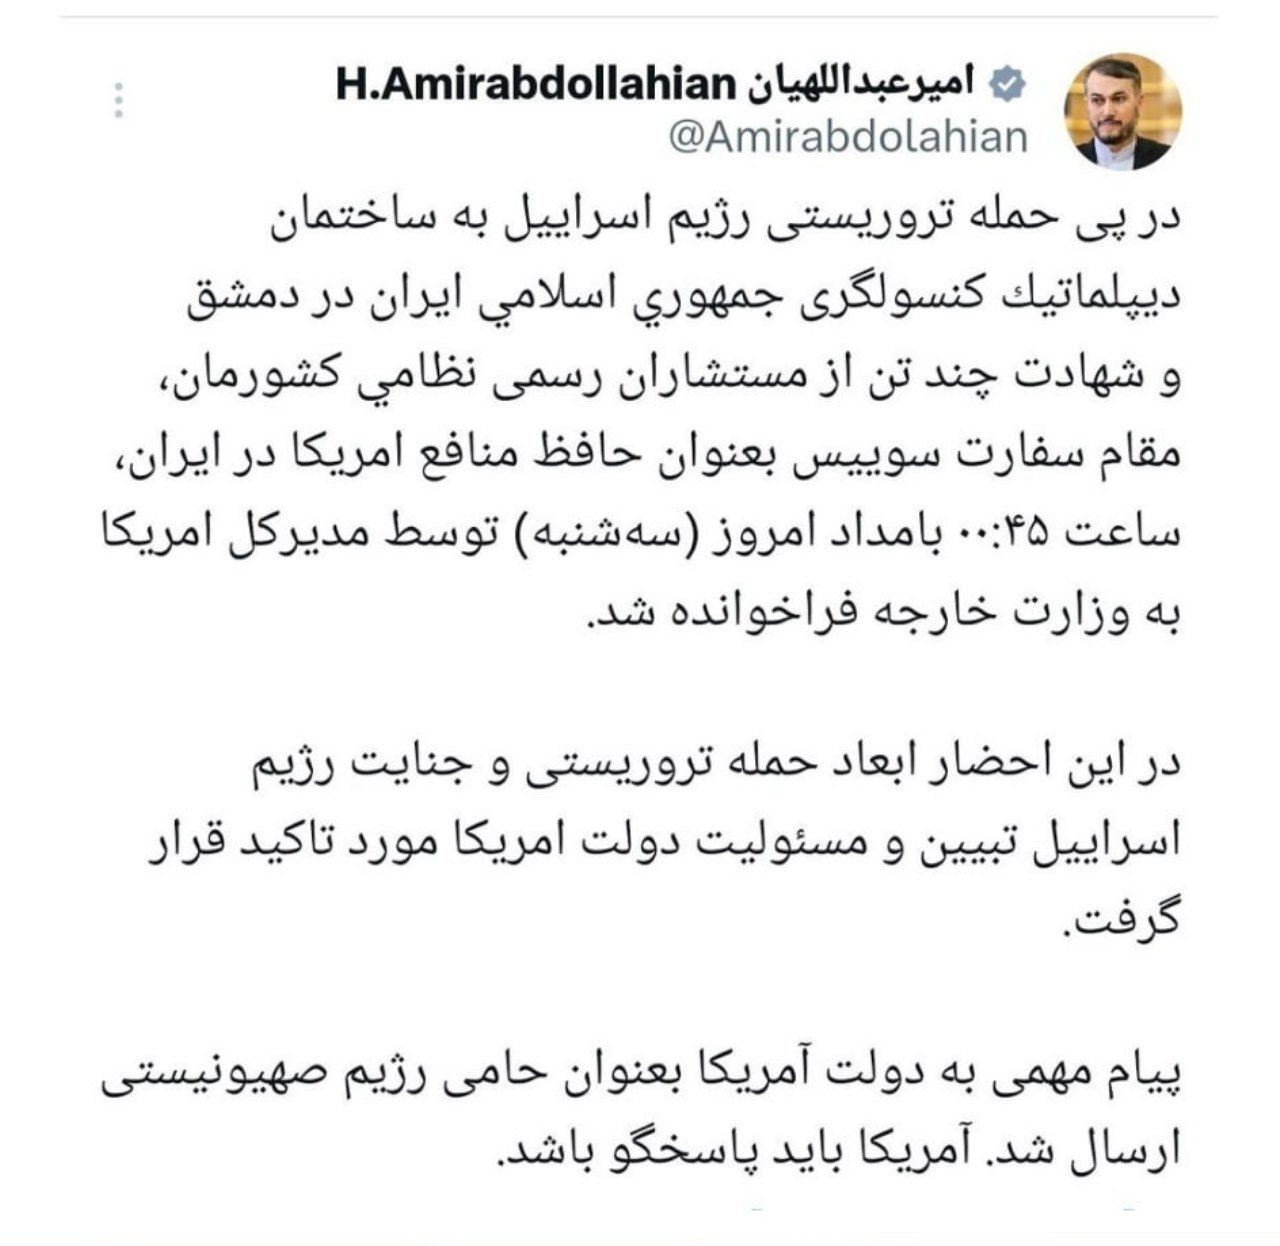 امیرعبداللهیان: پیام مهمی از طریق کاردار سفارت سوئیس به آمریکا ارسال کردیم